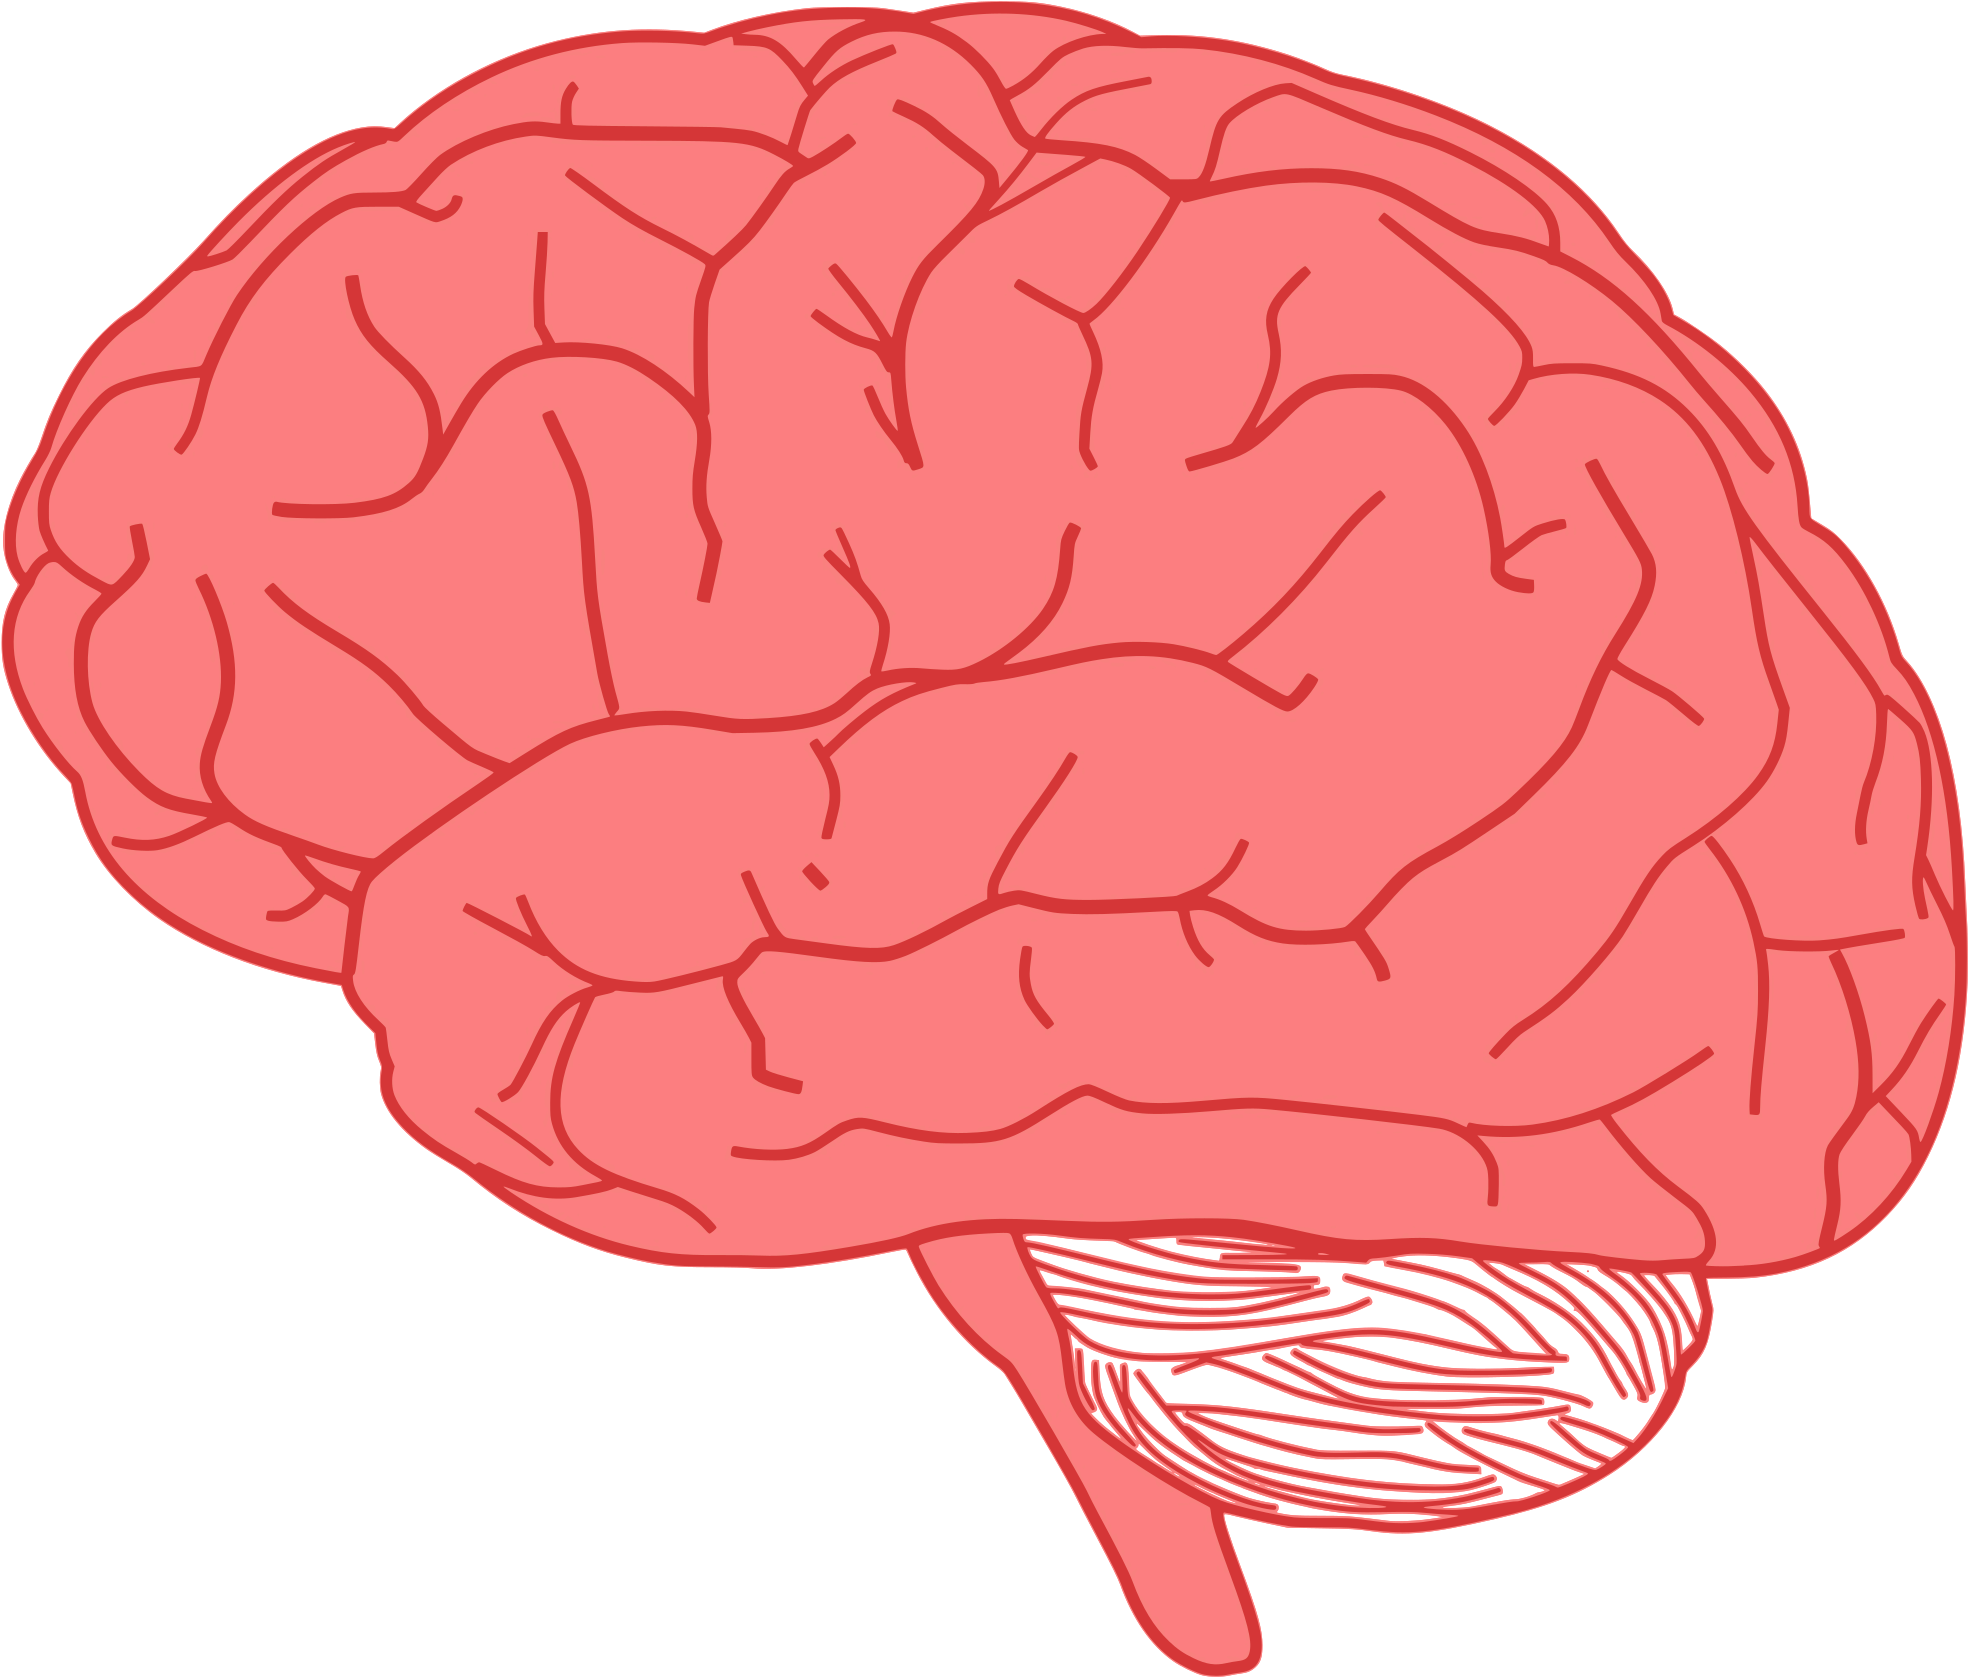 Et brain. Изображение мозга человека. Векторный мозг.